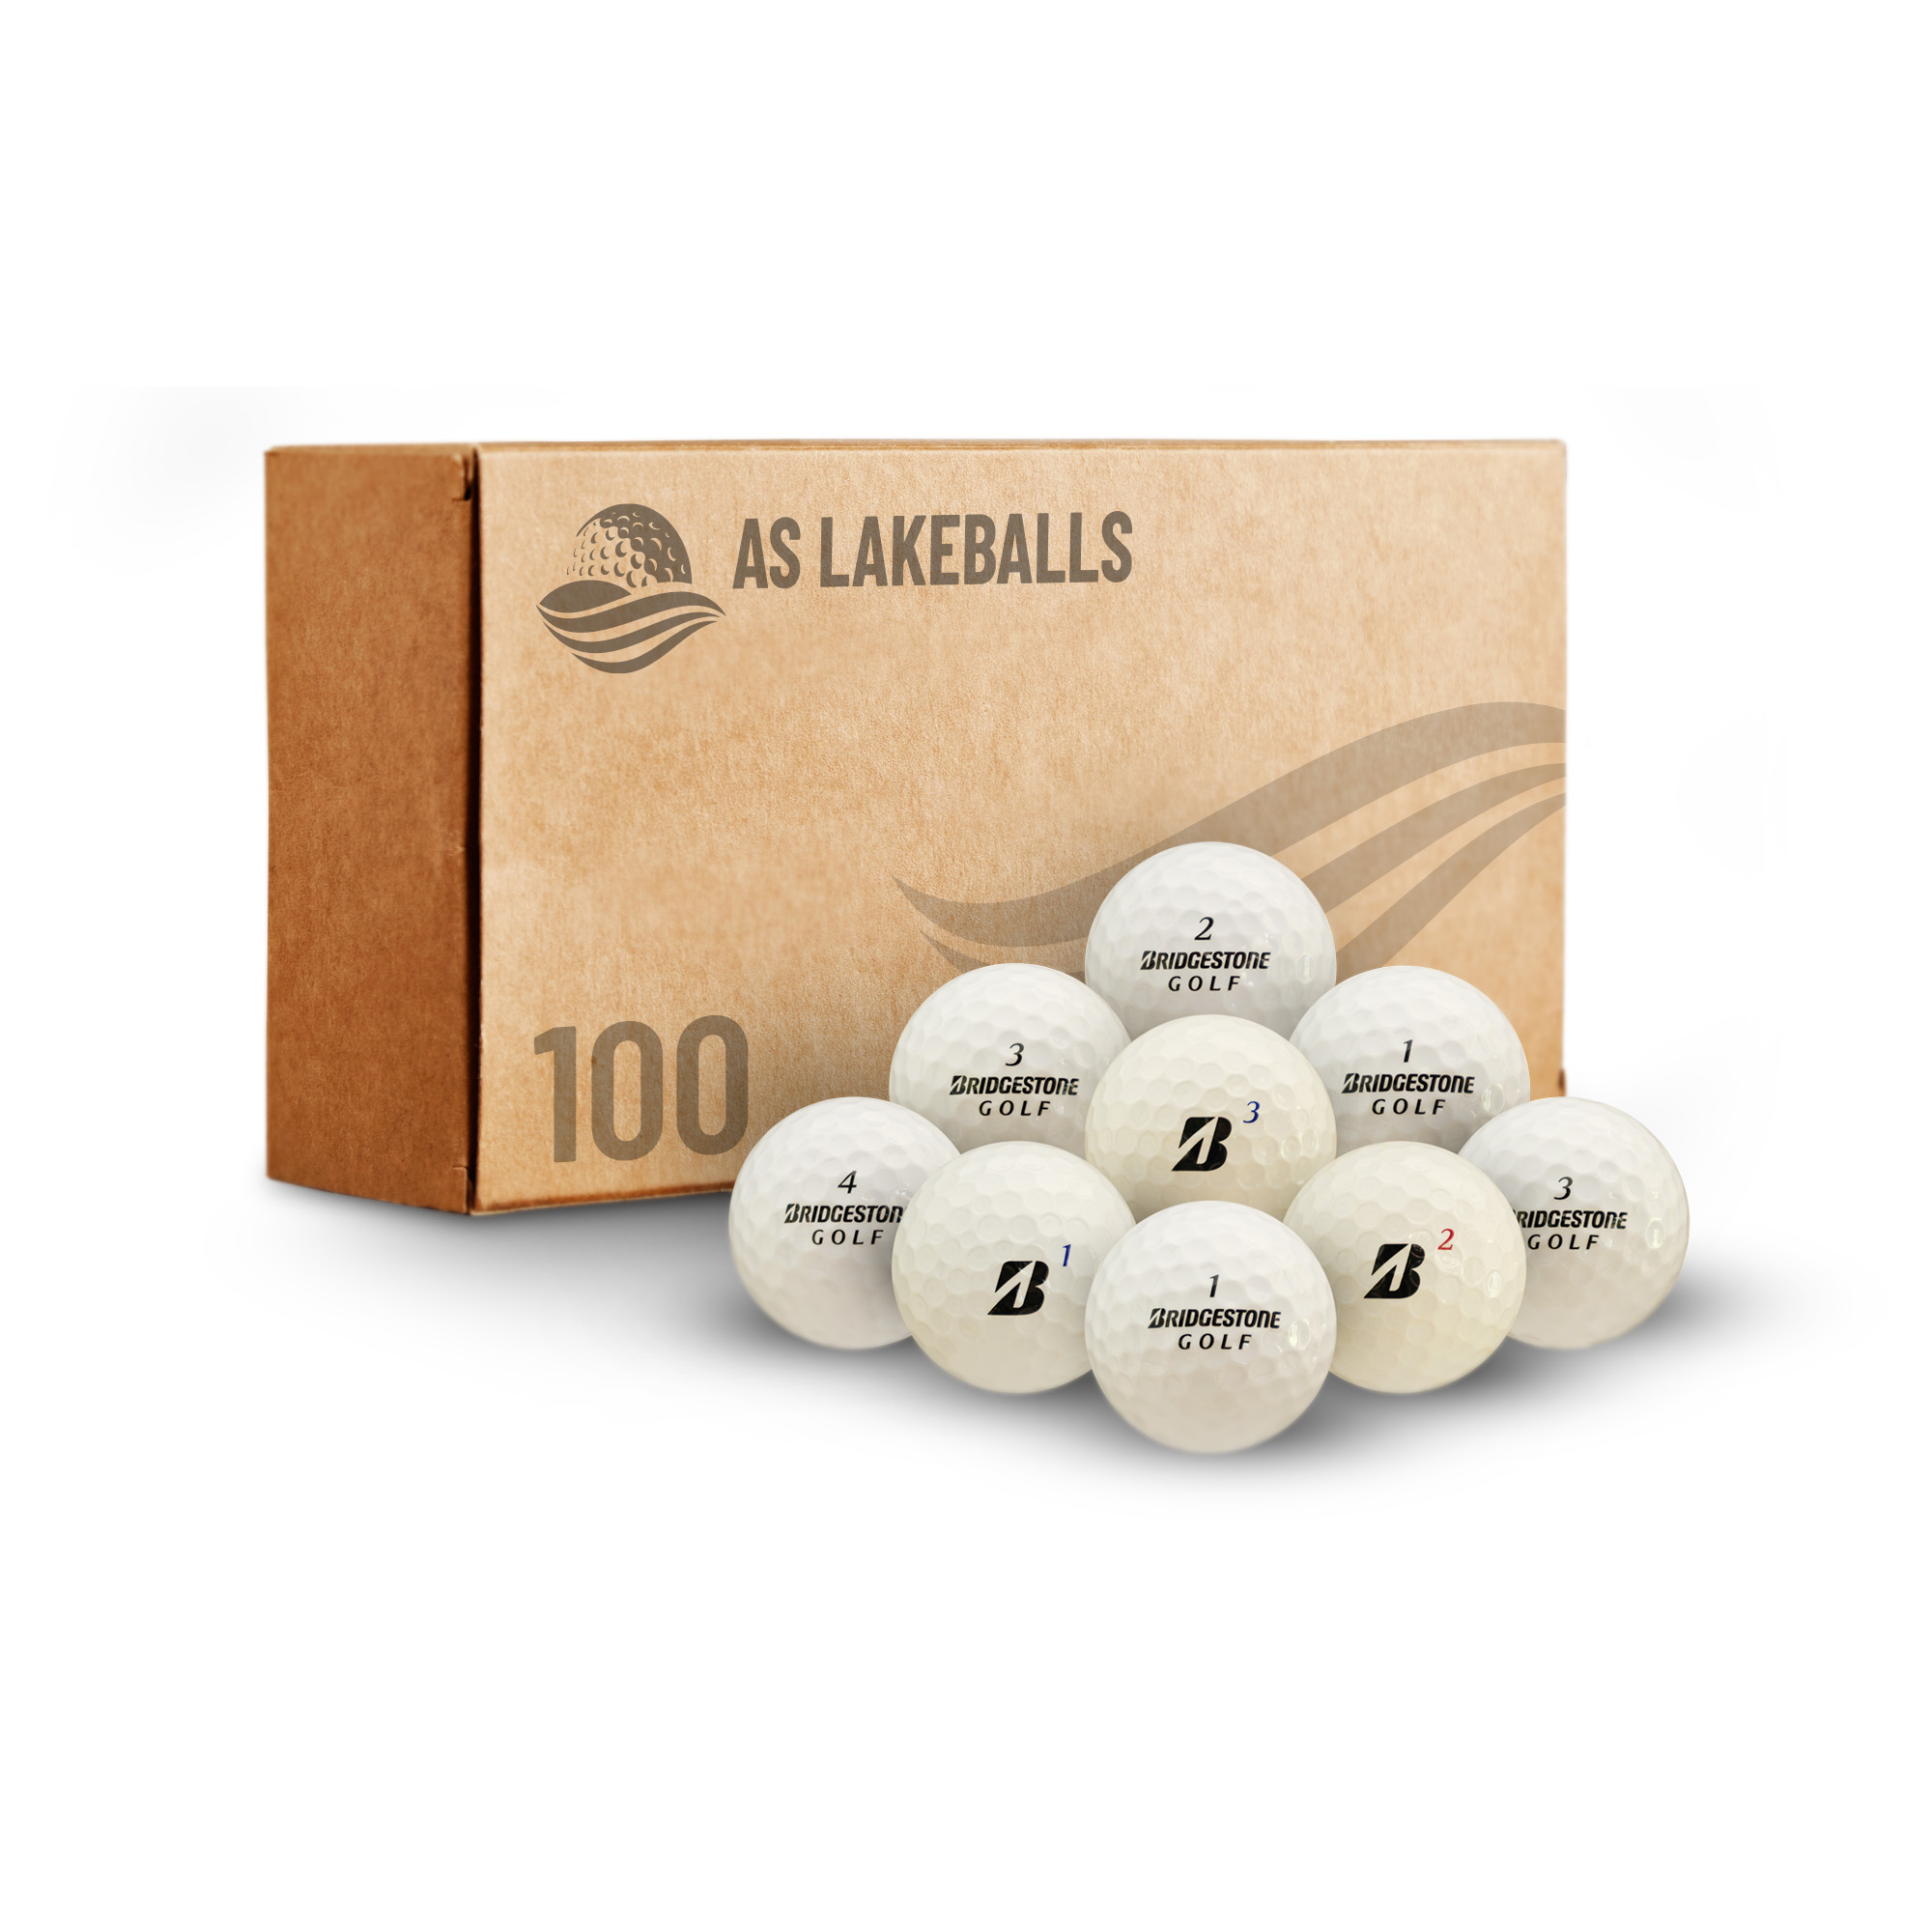 100 Bridgestone Mix AA-AAA bei AS Lakeballs günstig kaufen